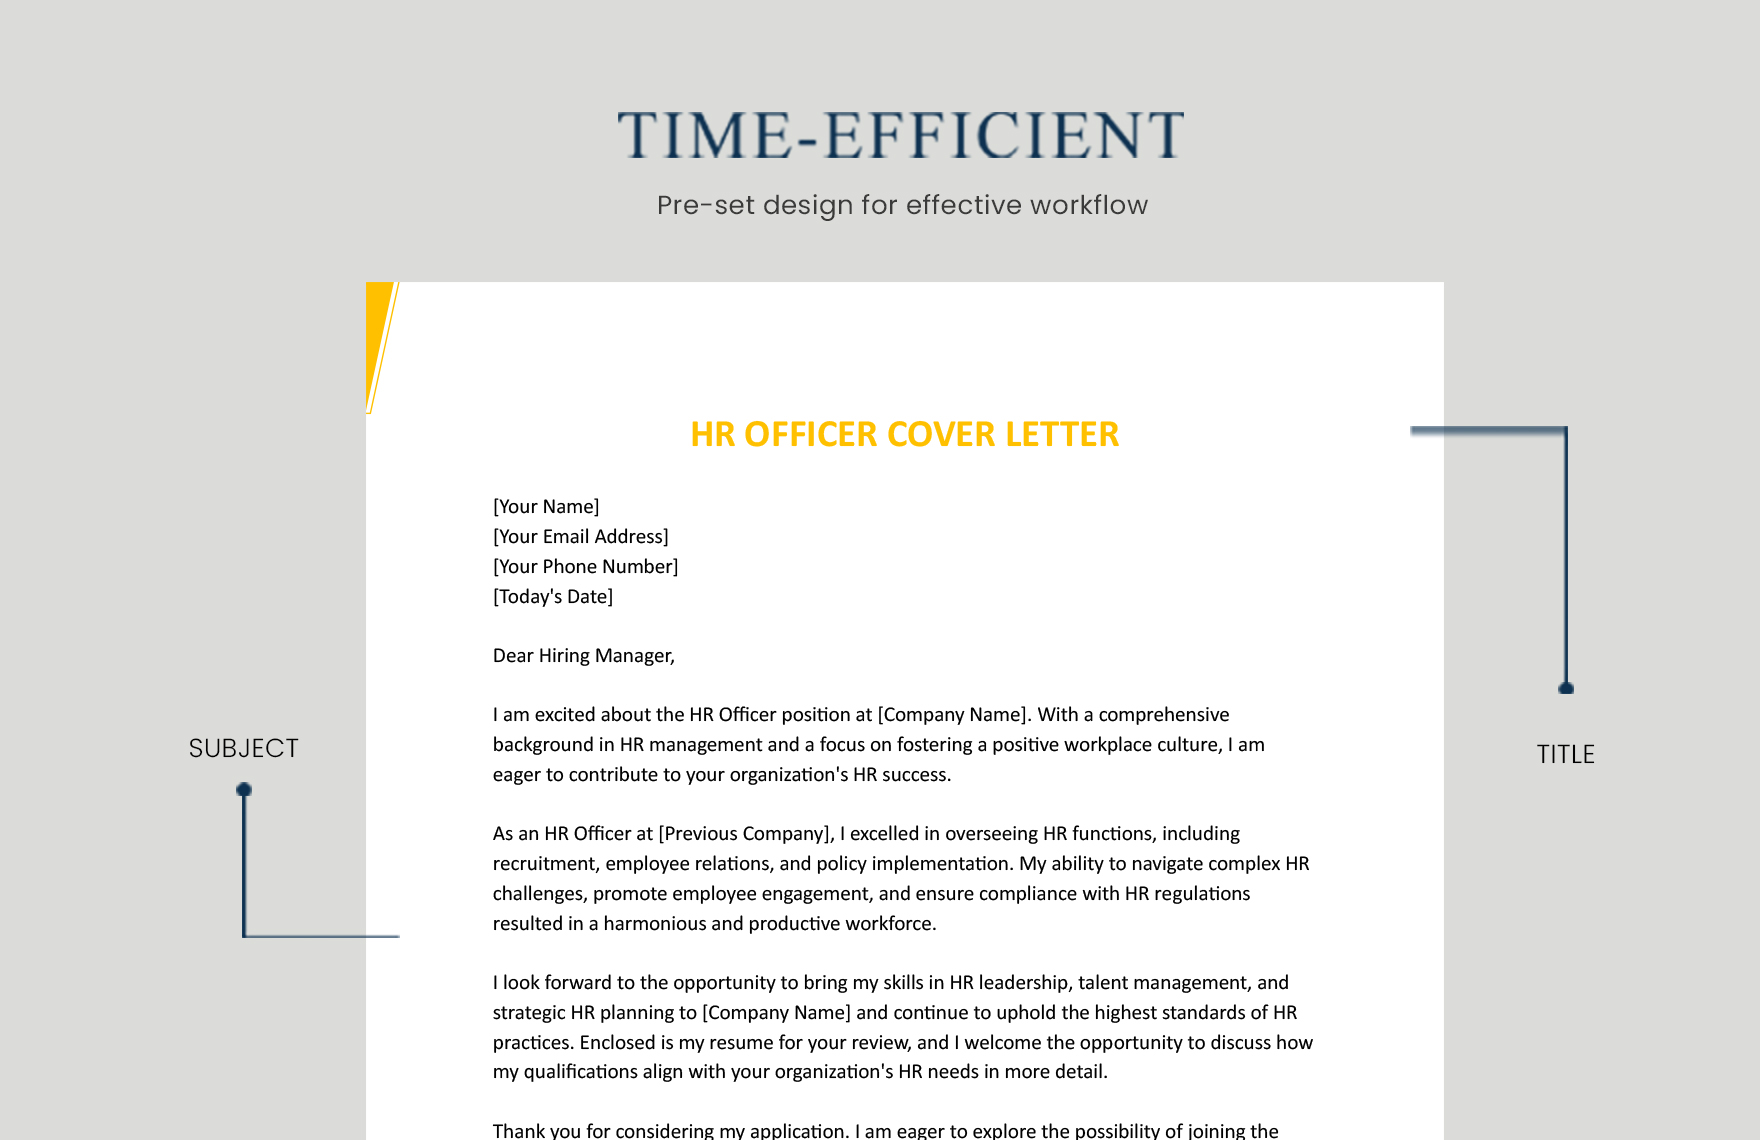 HR Officer Cover Letter